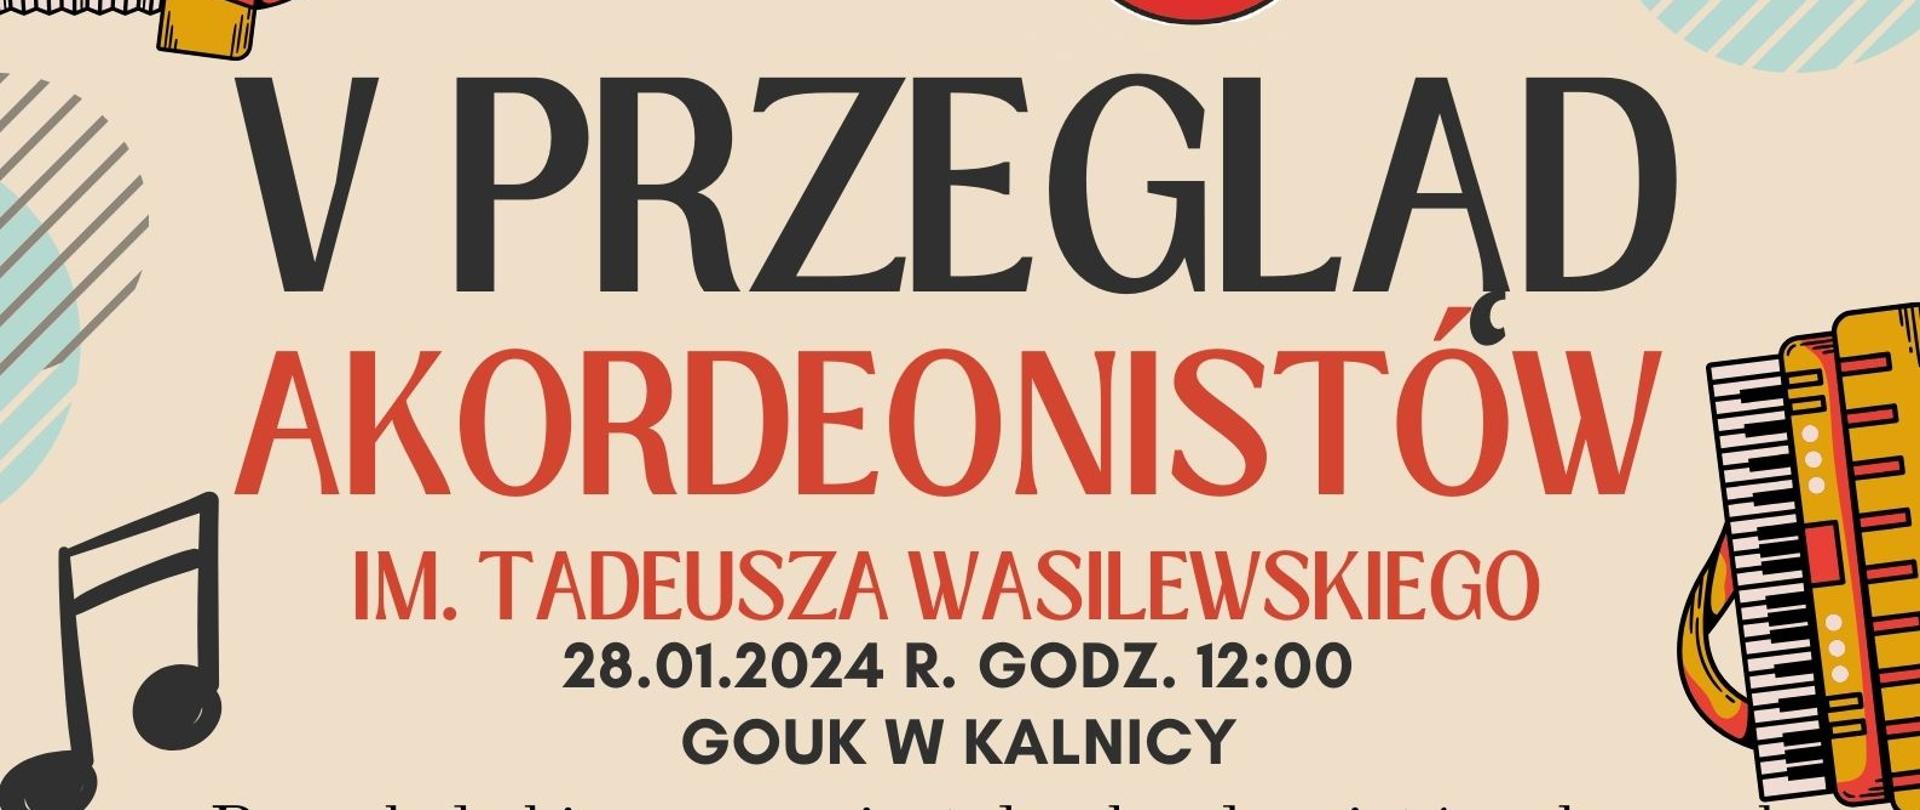 Plakat z informacją o V Przeglądzie Akordeonistów, który odbędzie się 28 stycznia 2024 r. w GOUK w Kalnicy